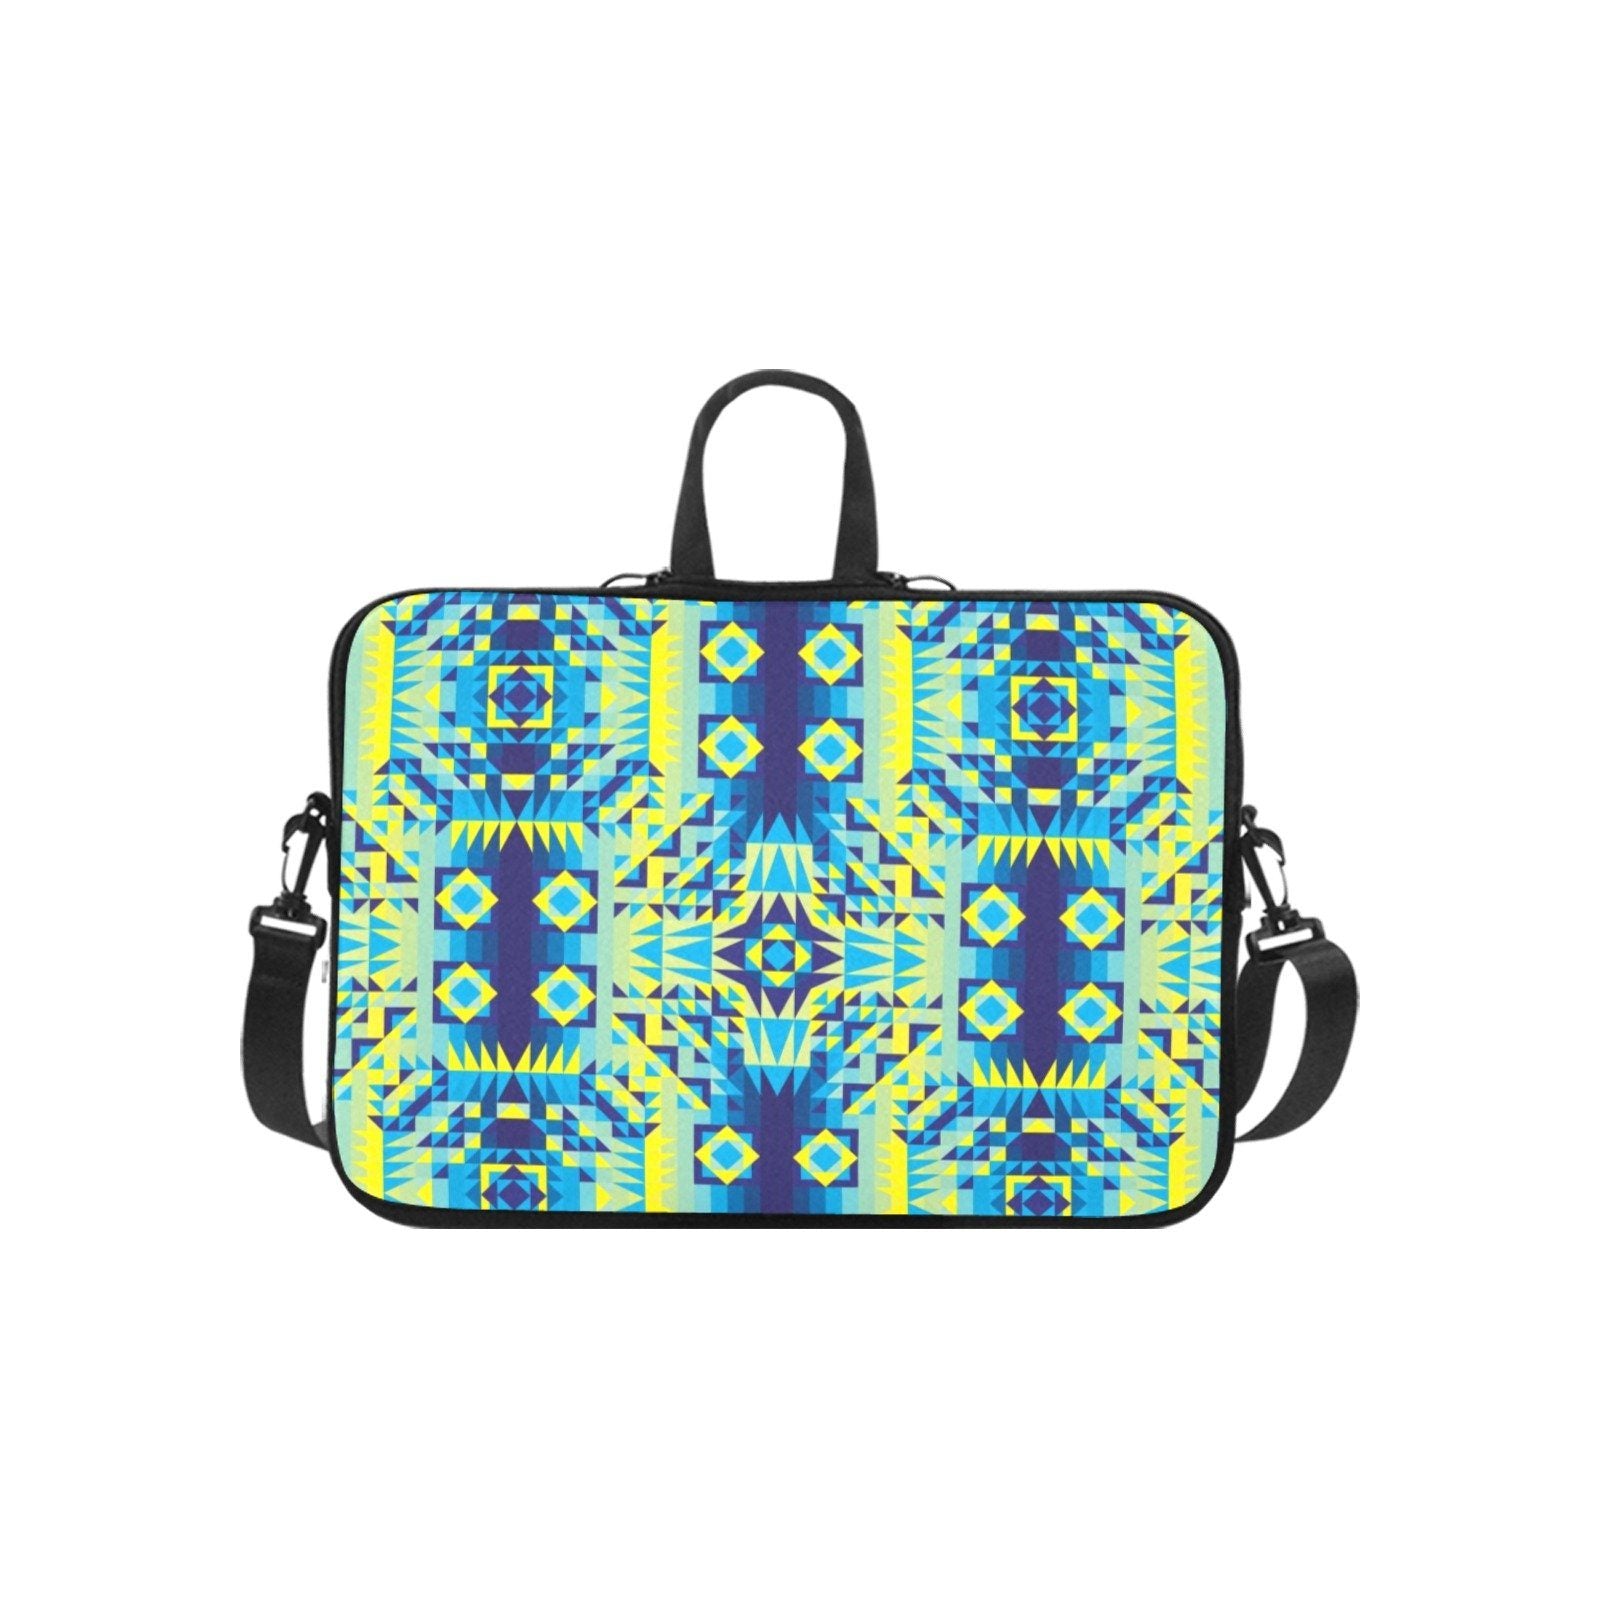 Kaleidoscope Jaune Bleu Laptop Handbags 10" bag e-joyer 